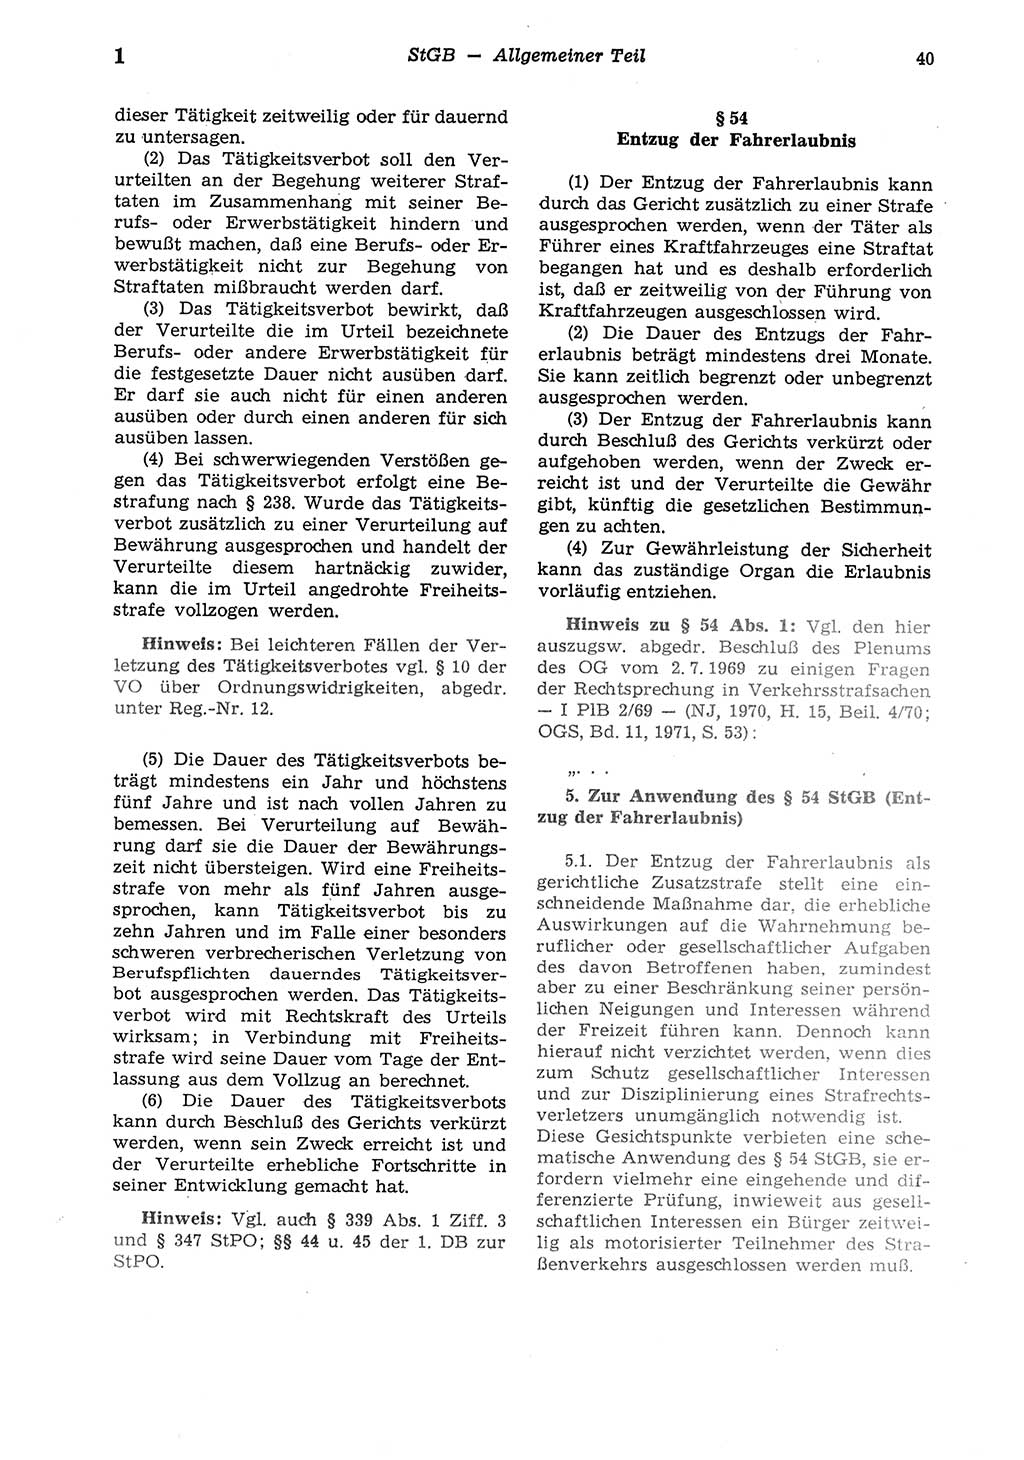 Strafgesetzbuch (StGB) der Deutschen Demokratischen Republik (DDR) und angrenzende Gesetze und Bestimmungen 1975, Seite 40 (StGB DDR Ges. Best. 1975, S. 40)